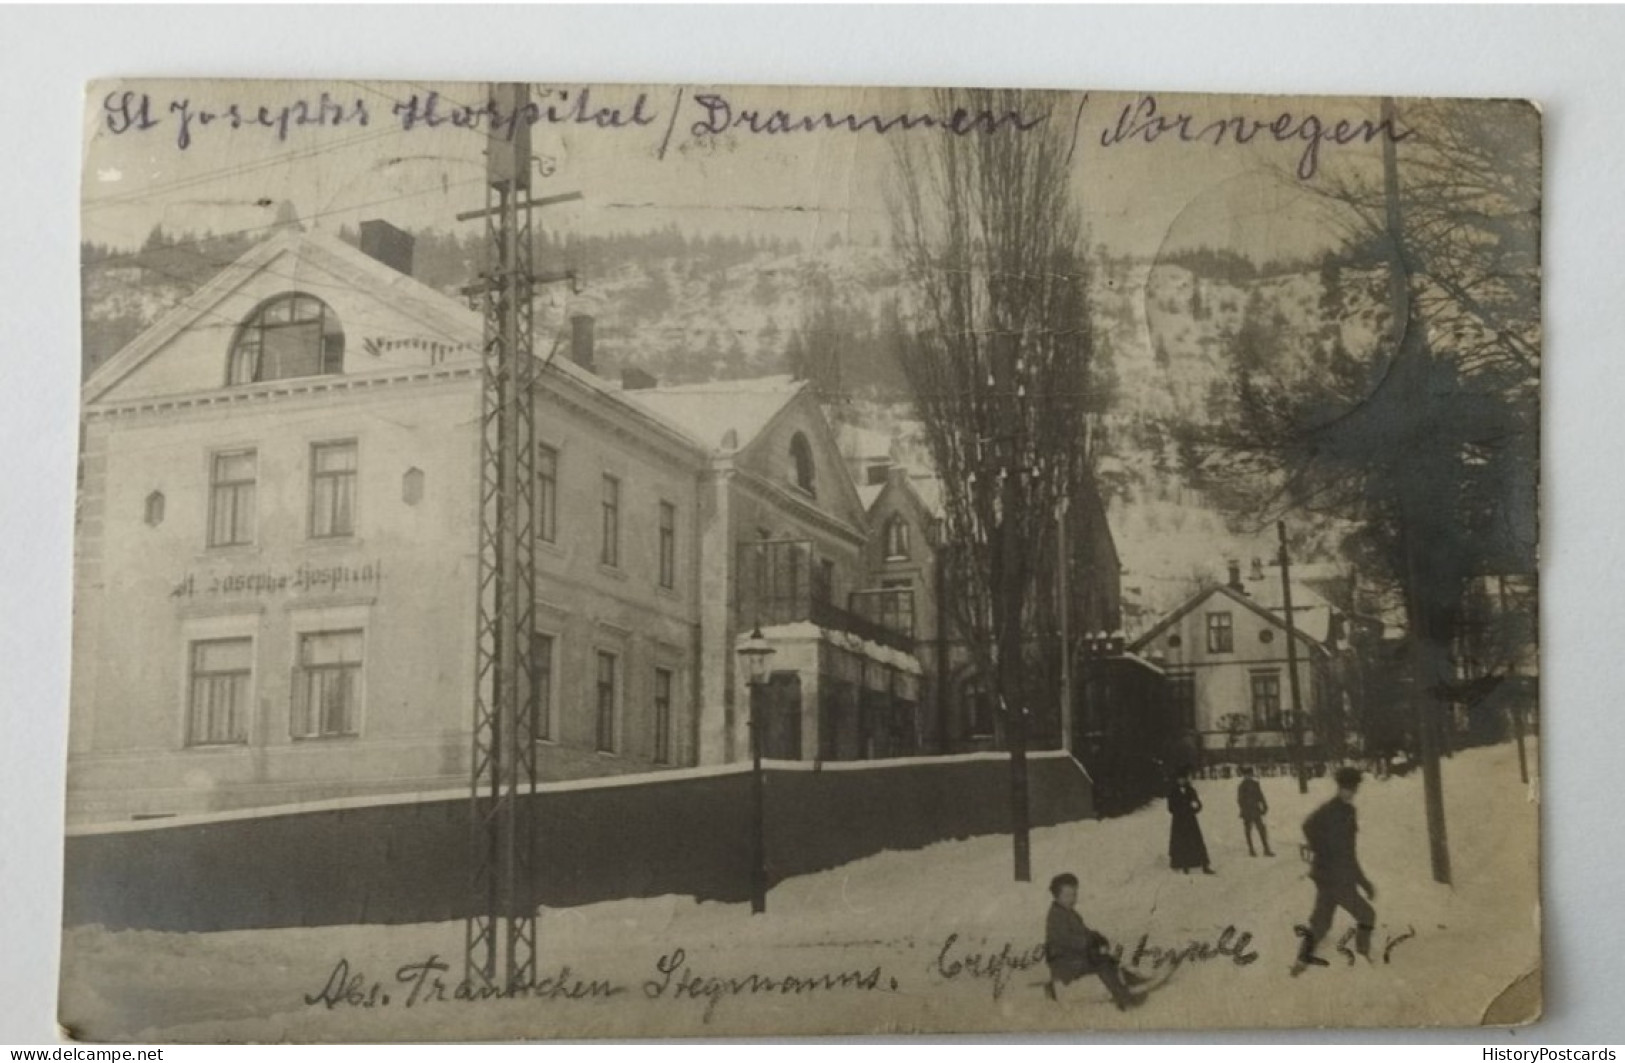 Drammen, St. Josephs Hospital, Winter, Norwegen, Norge, 1914 - Norvège